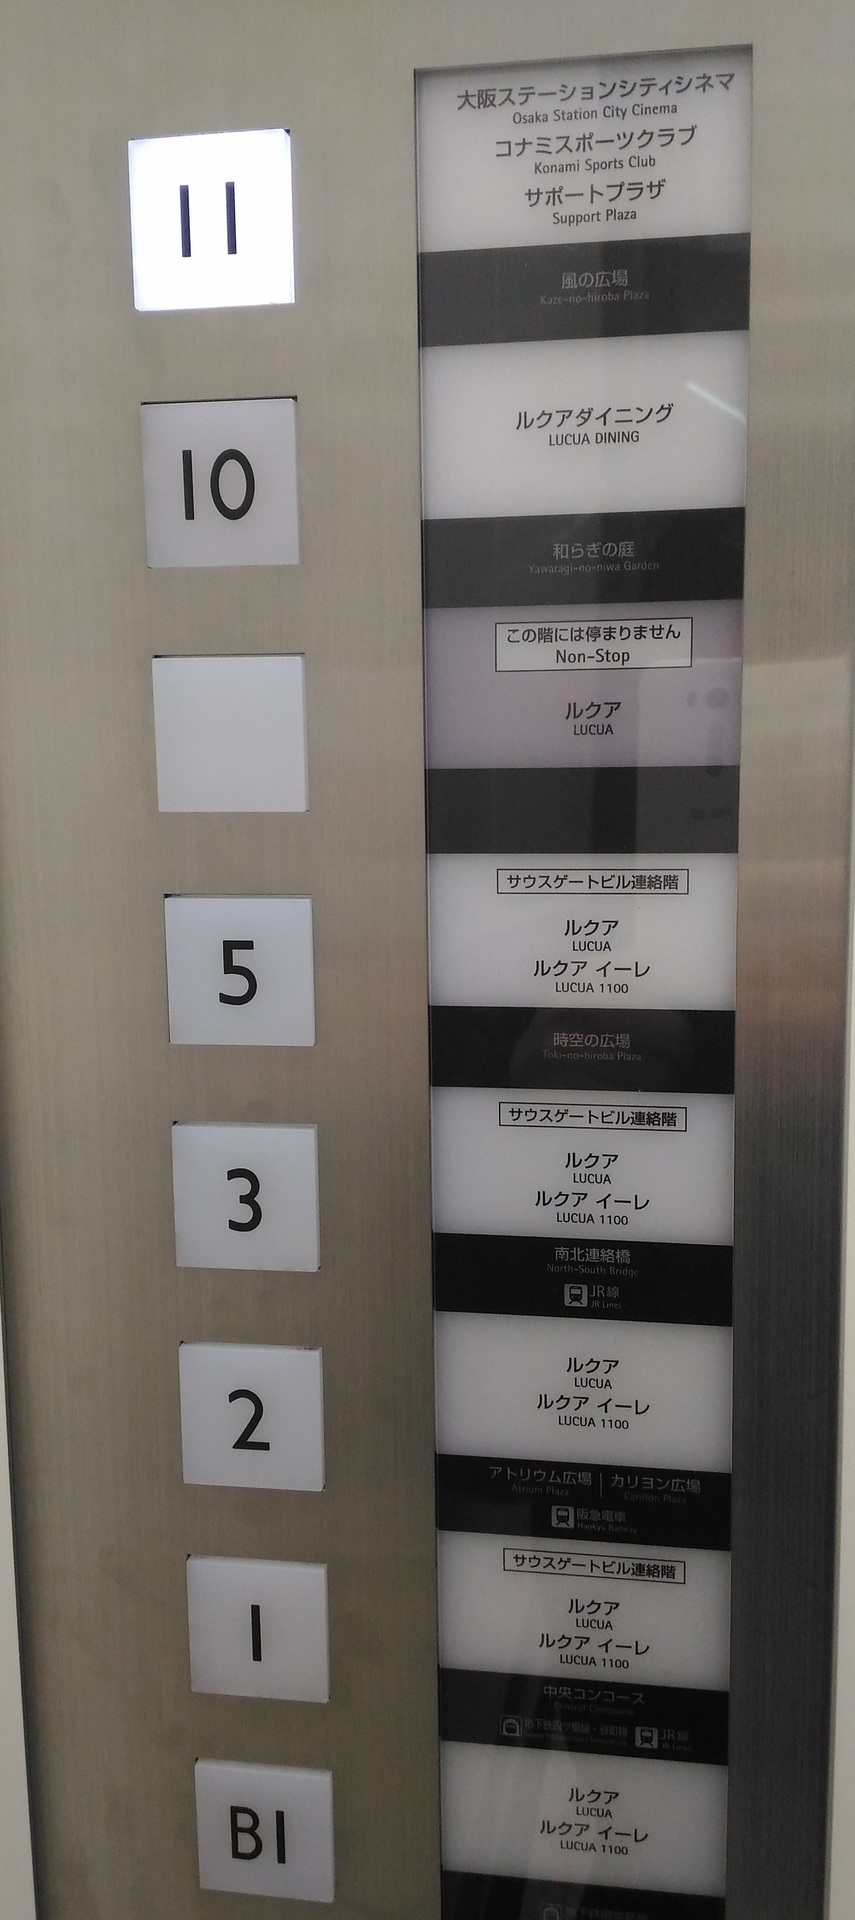 ルクアのエレベーターから 大阪ステーションシティシネマ映画館 大阪市北区中津 賃貸マンションで一人暮らし始めてみました